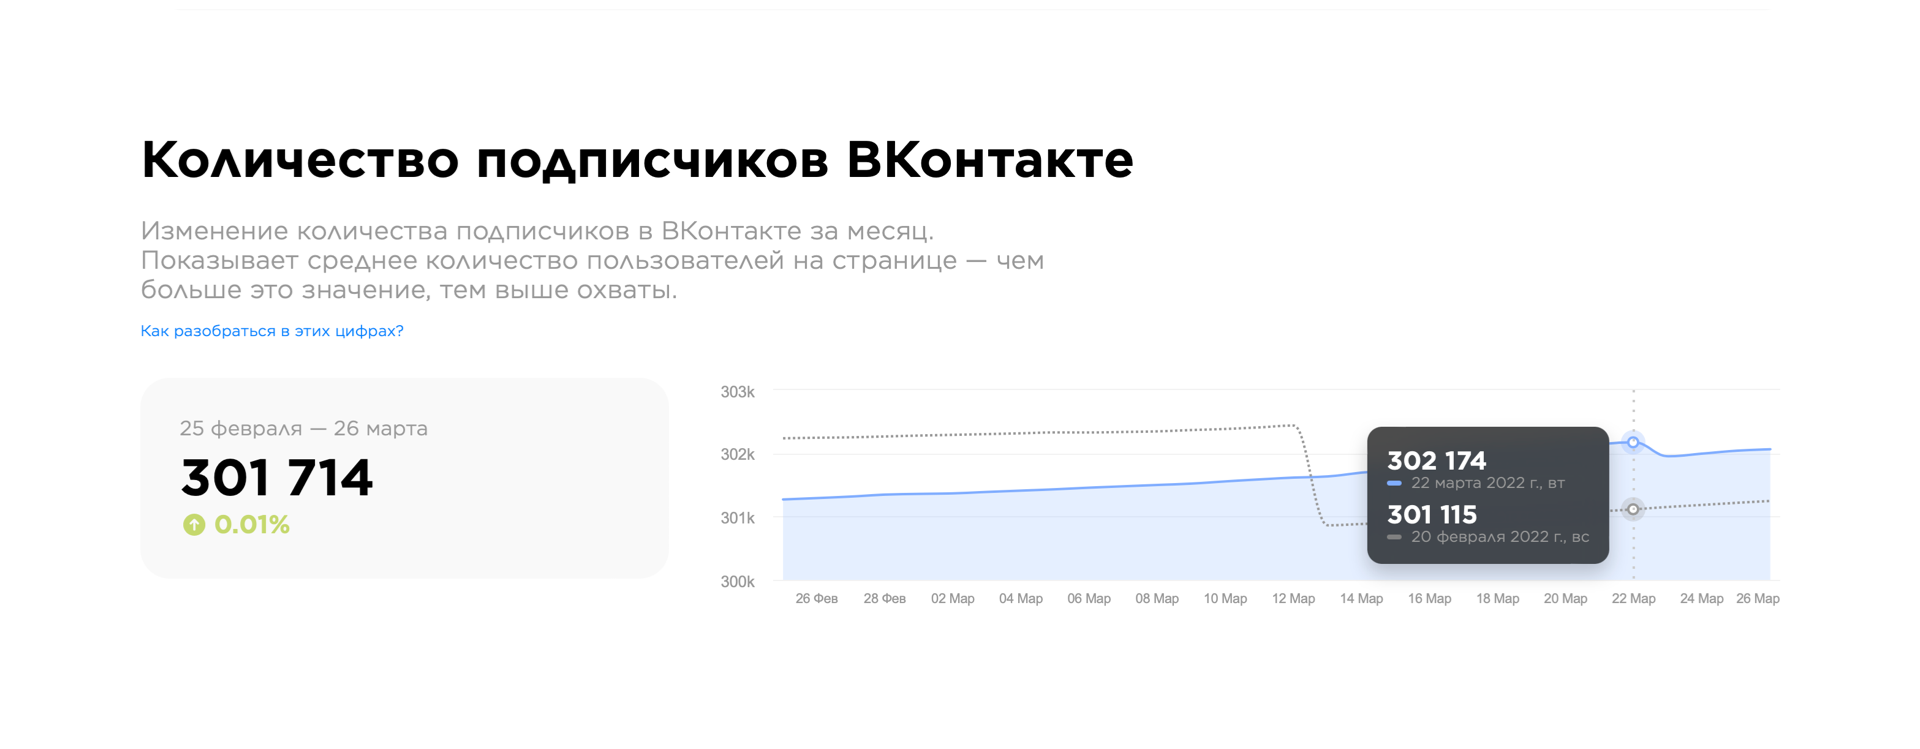 Количество подписчиков ВКонтакте.png